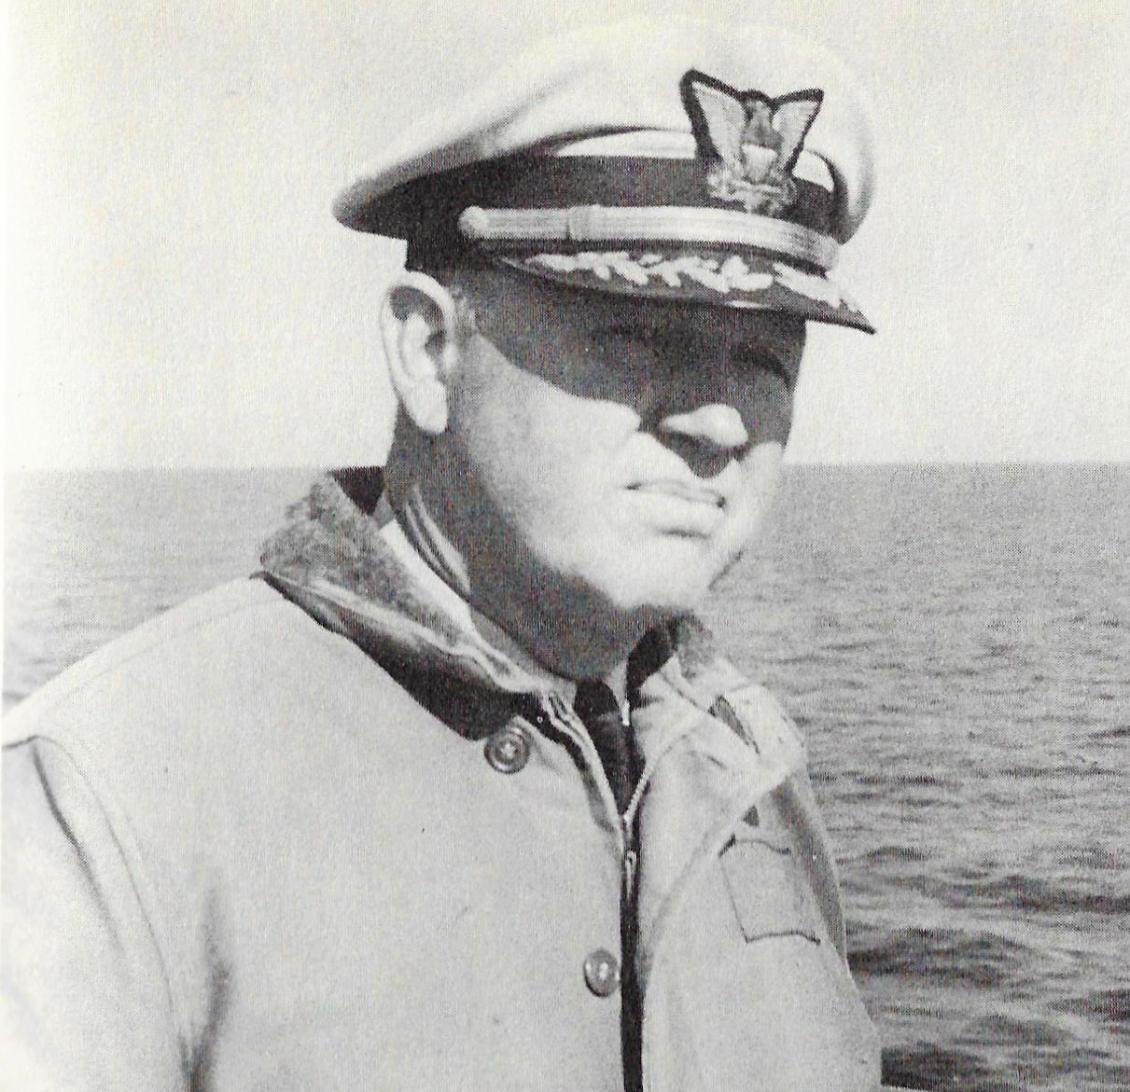 Capt5ain Carl G Bowman - Coast Guard Eagle 1950 - 1954